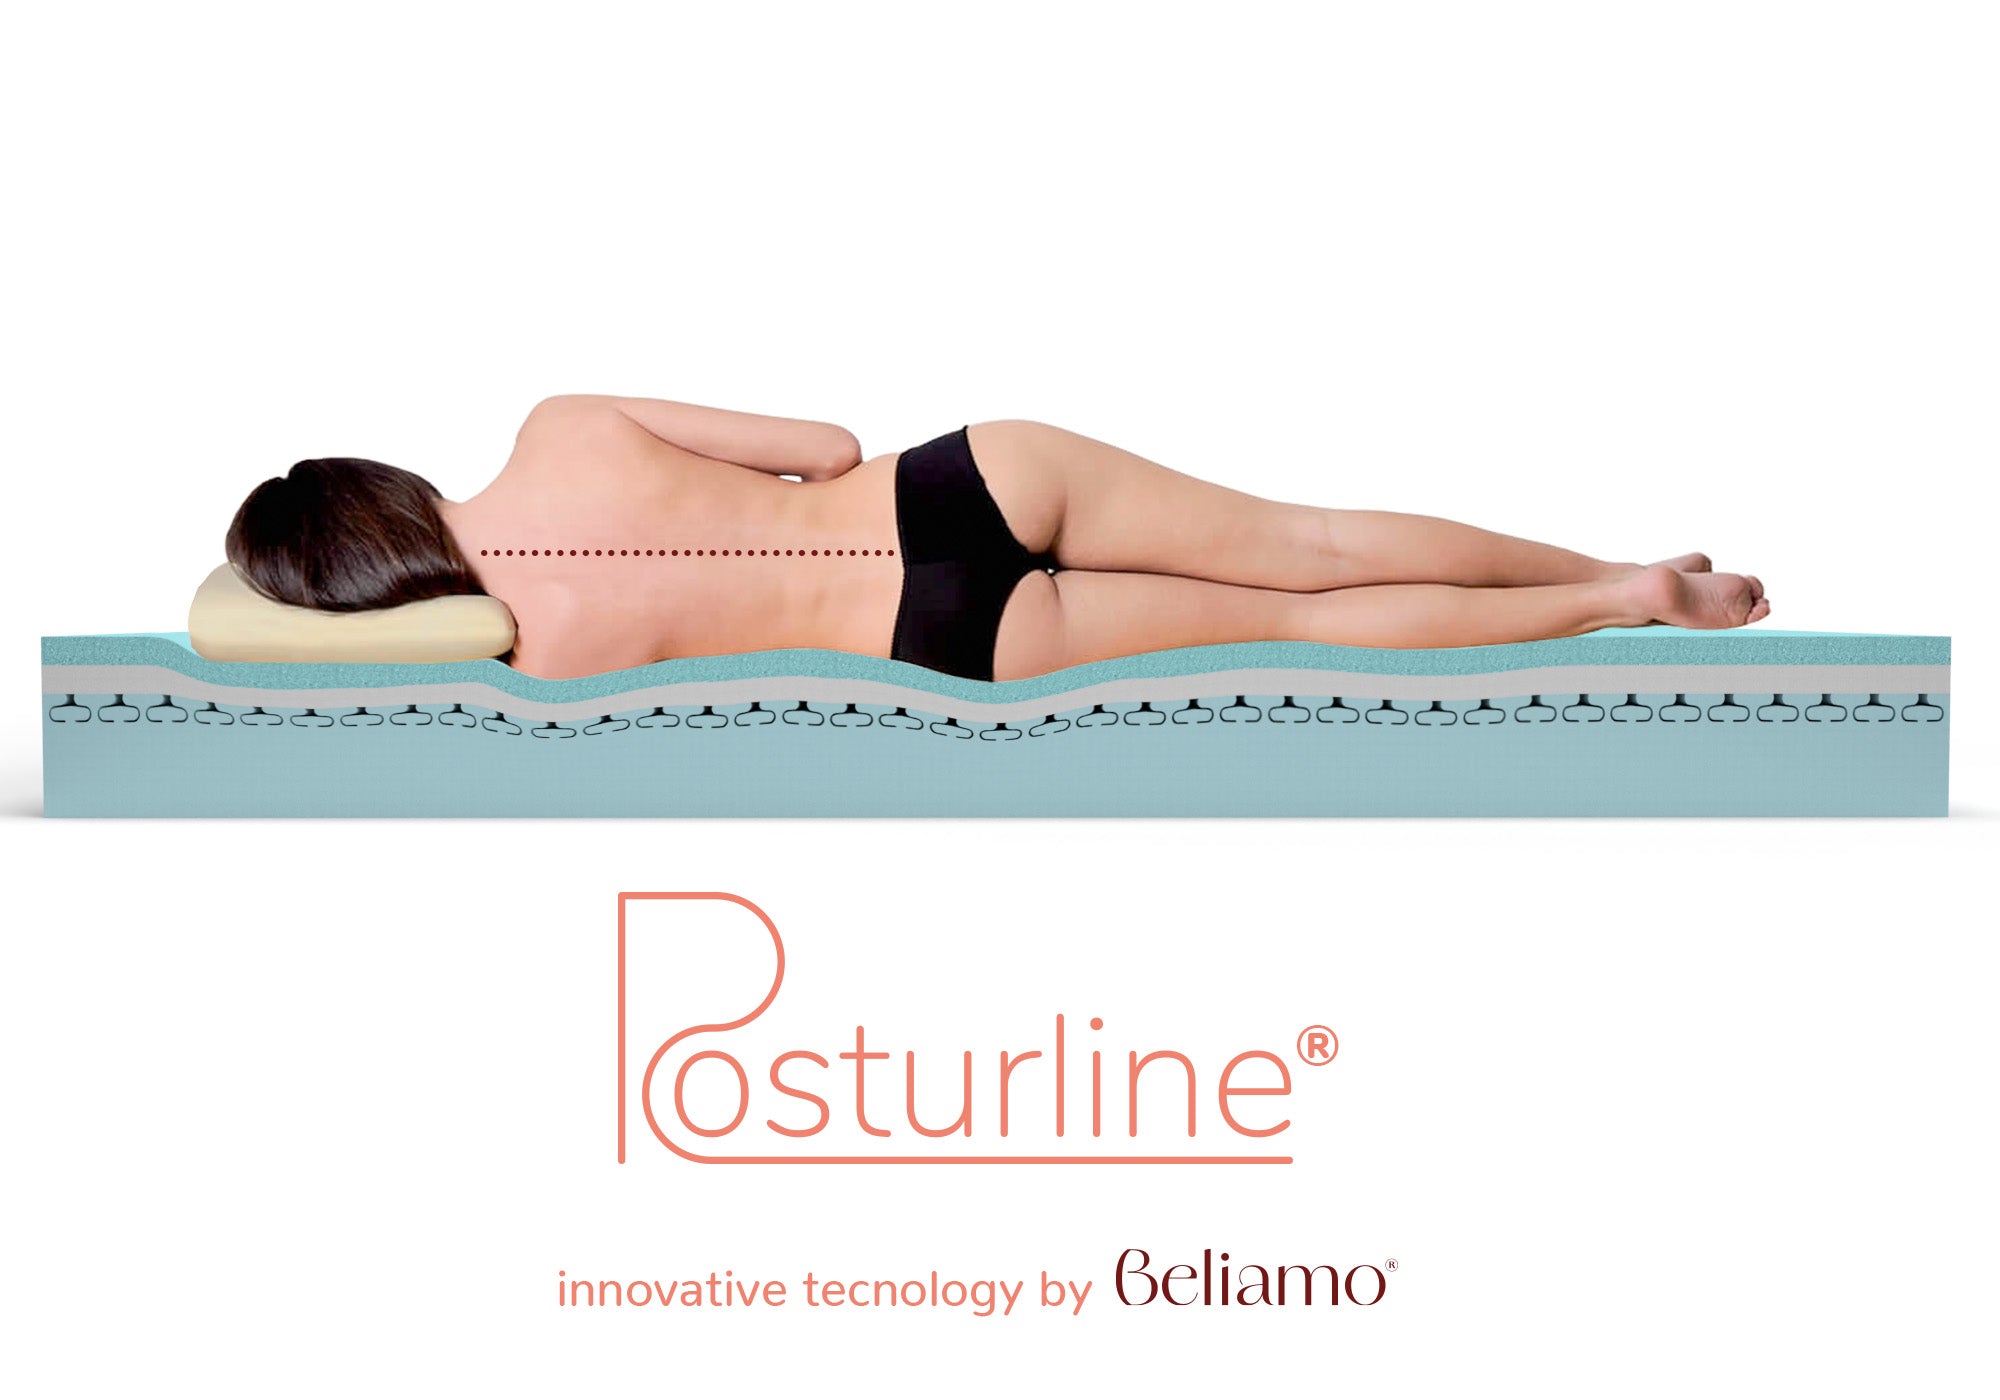 Adattamento ergonomico PosturLine di Beliamo, dimostrando il supporto ottimale della colonna vertebrale su un materasso per migliorare il comfort e la postura